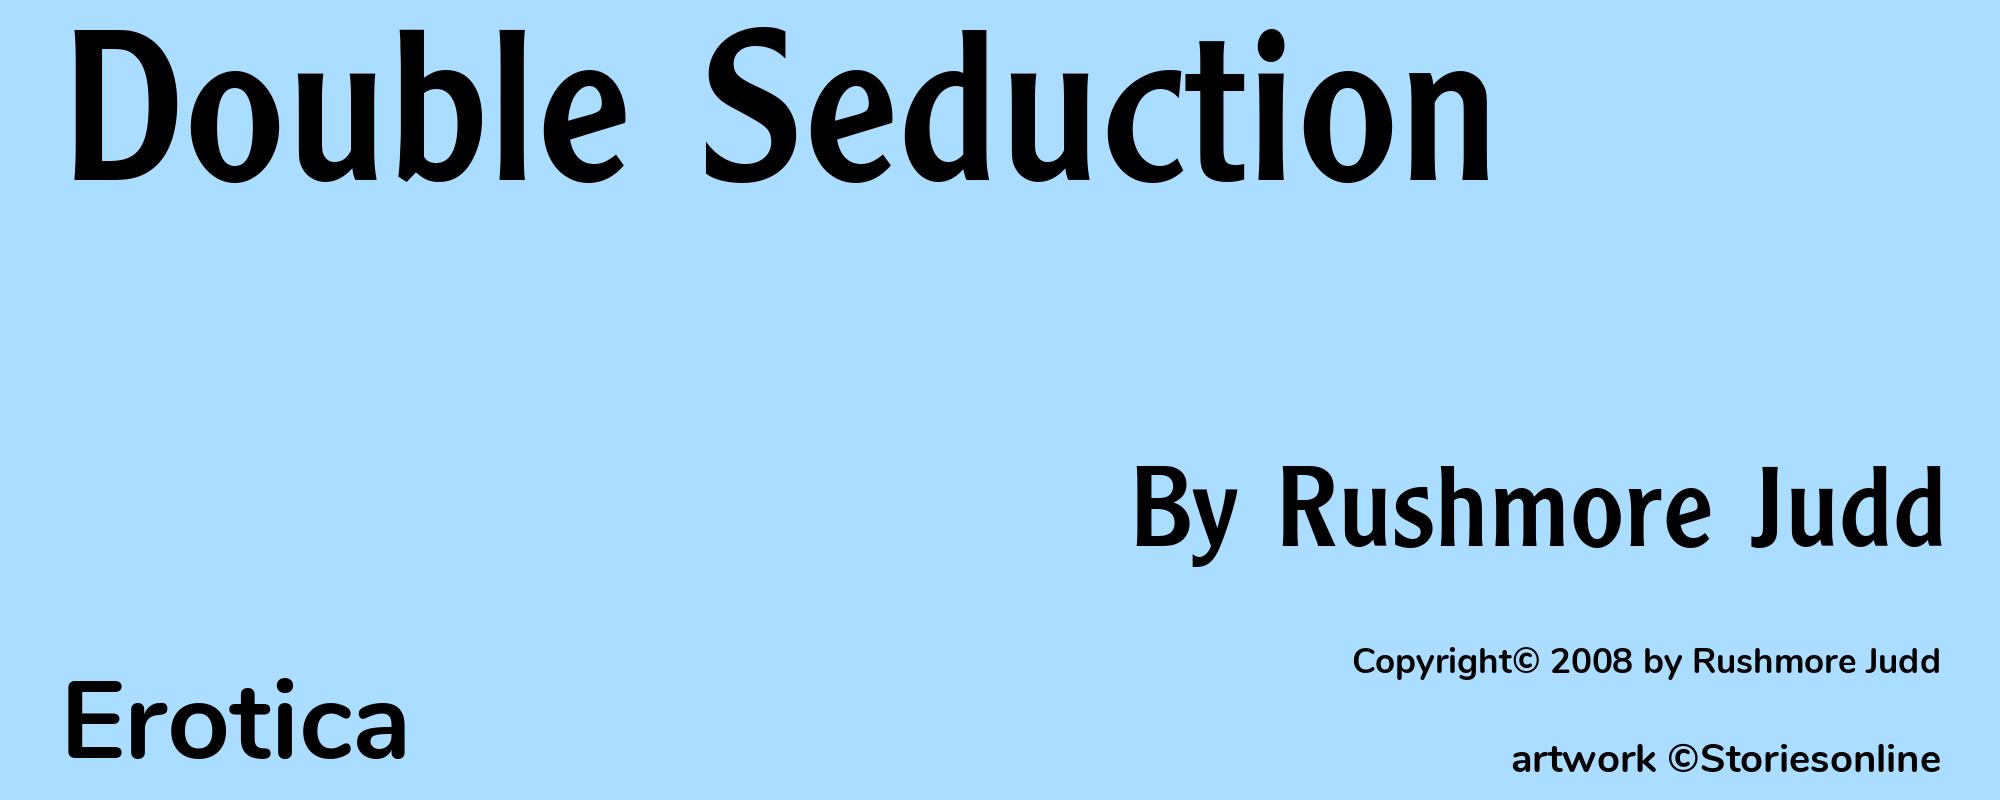 Double Seduction - Cover